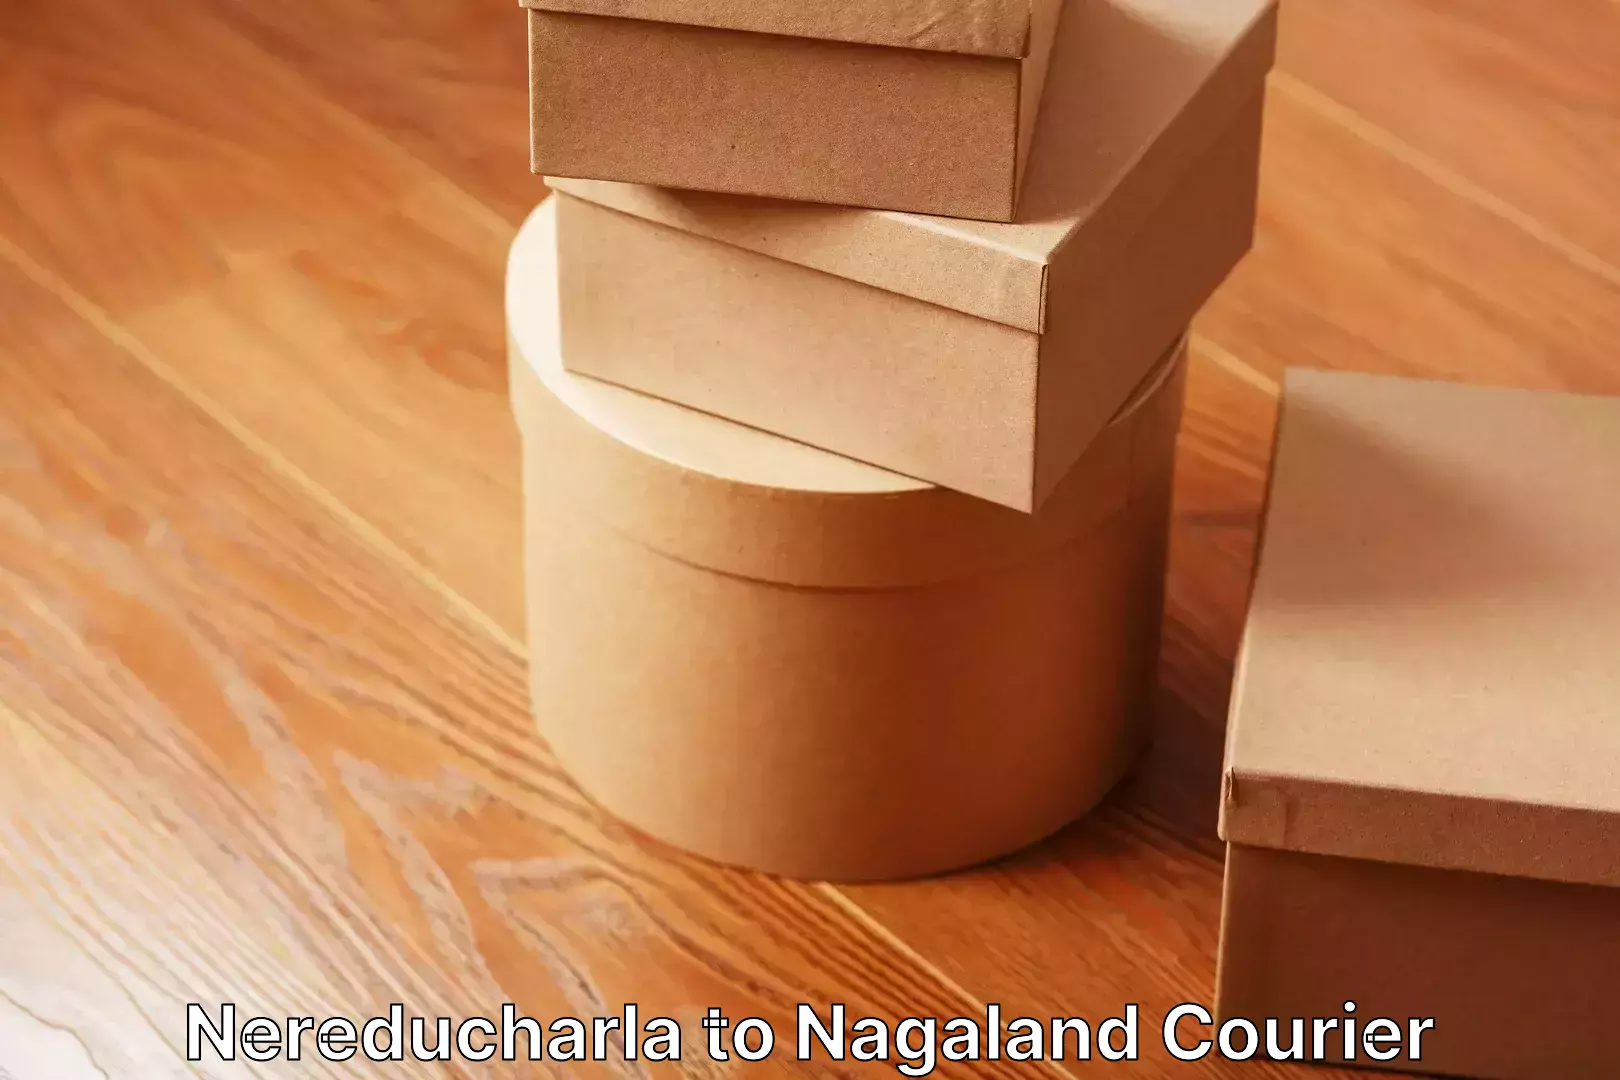 Efficient household moving Nereducharla to Nagaland